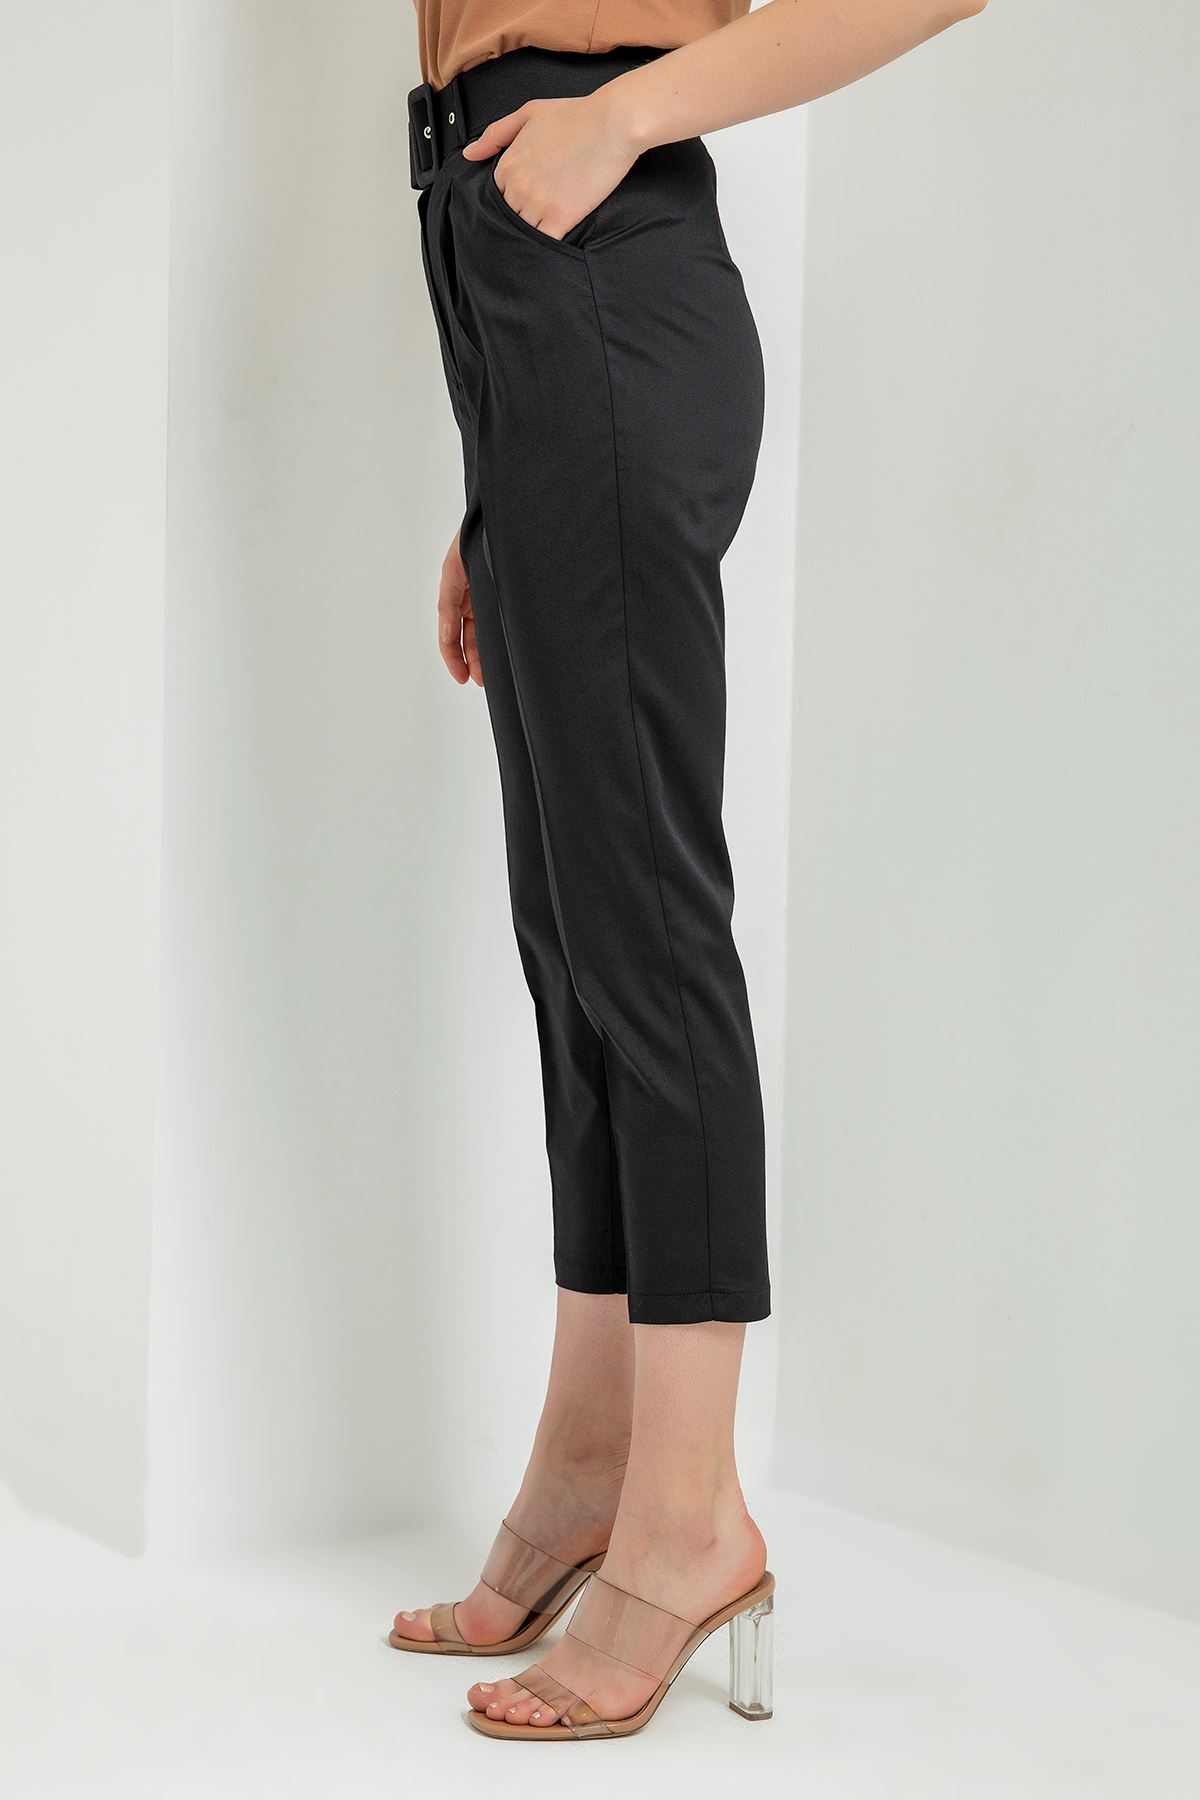 атласный ткань 3/4 длина Женские брюки с ремнем - Чёрный